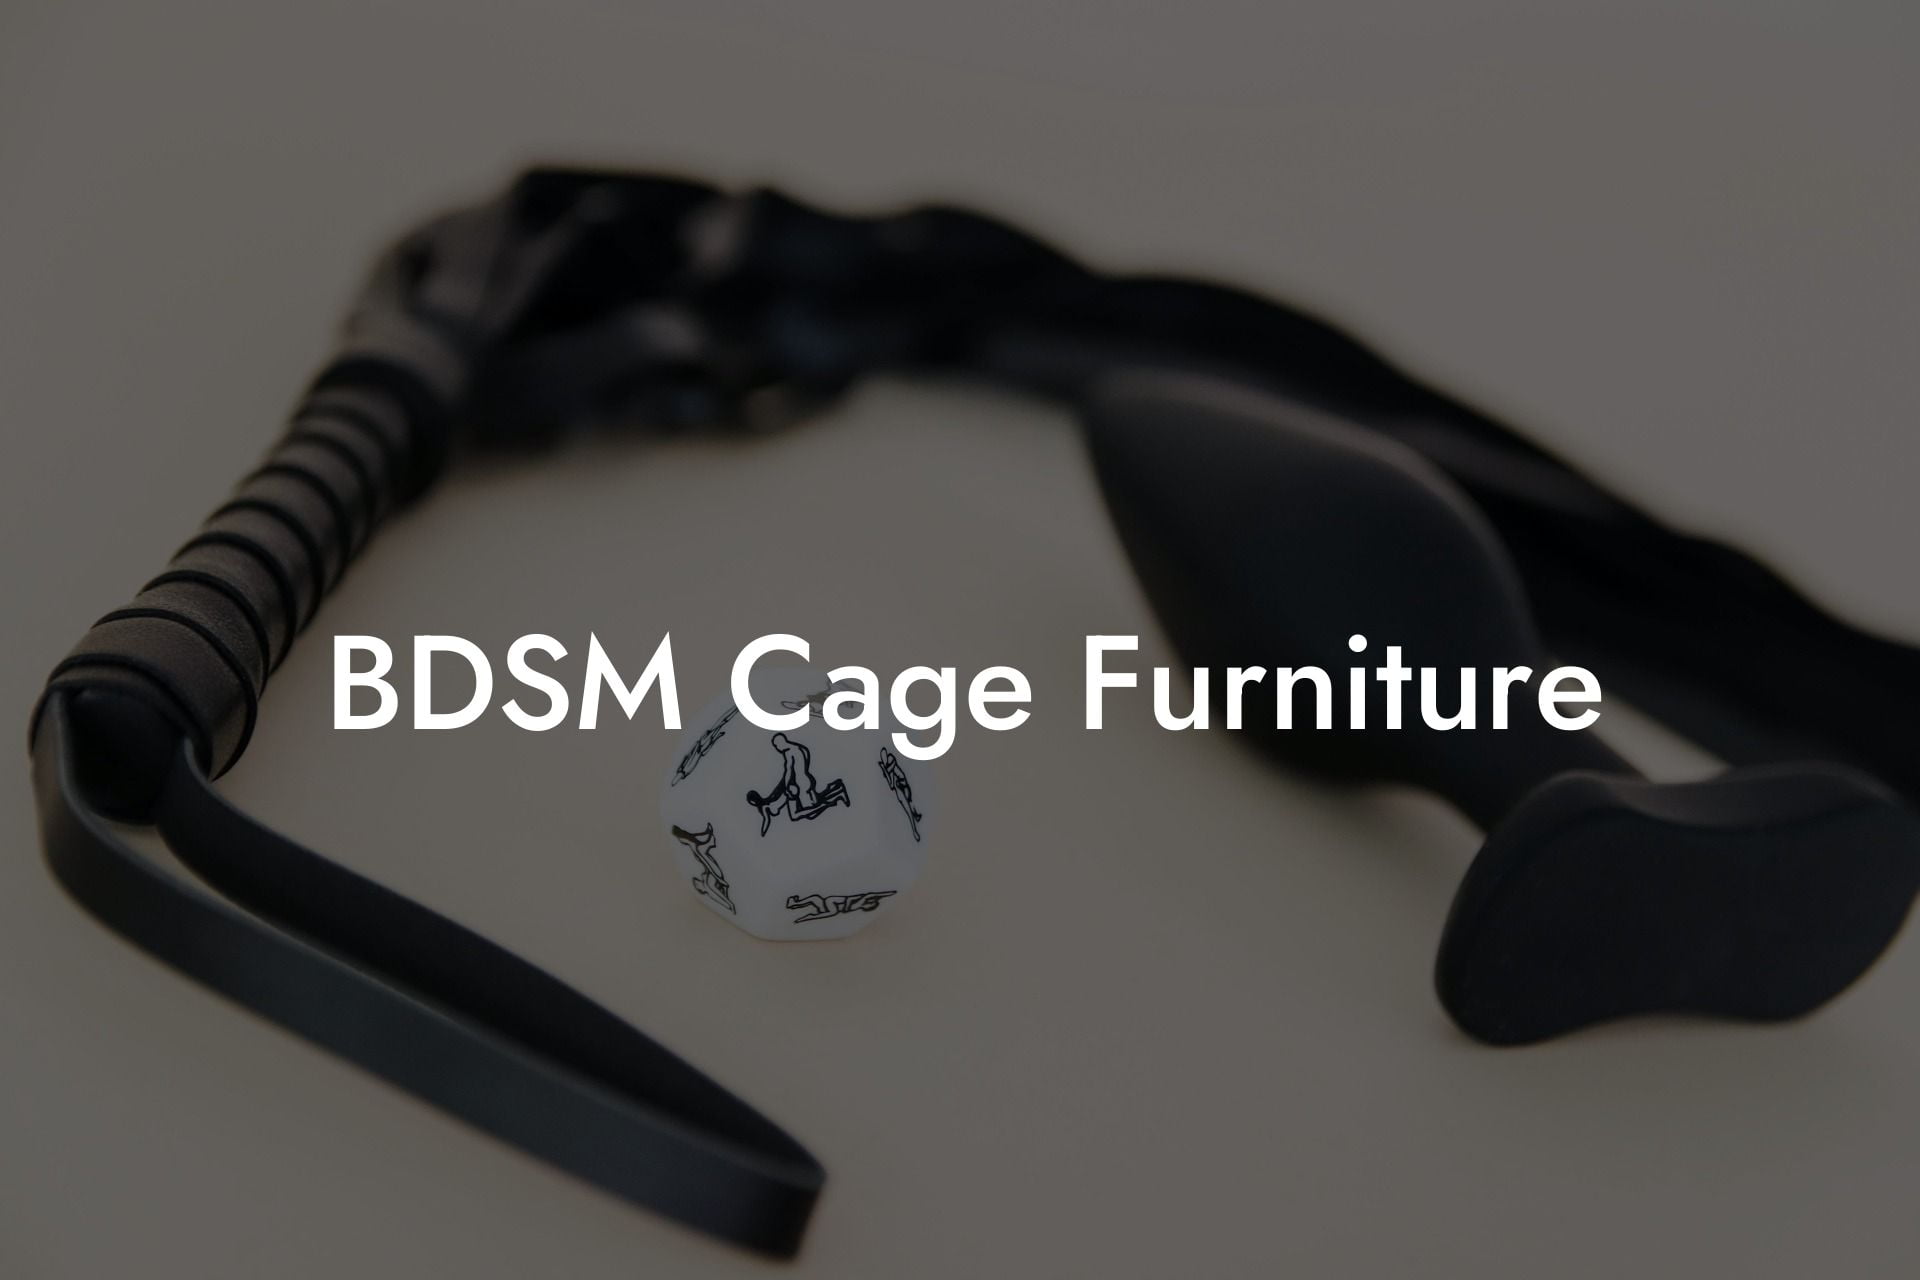 BDSM Cage Furniture